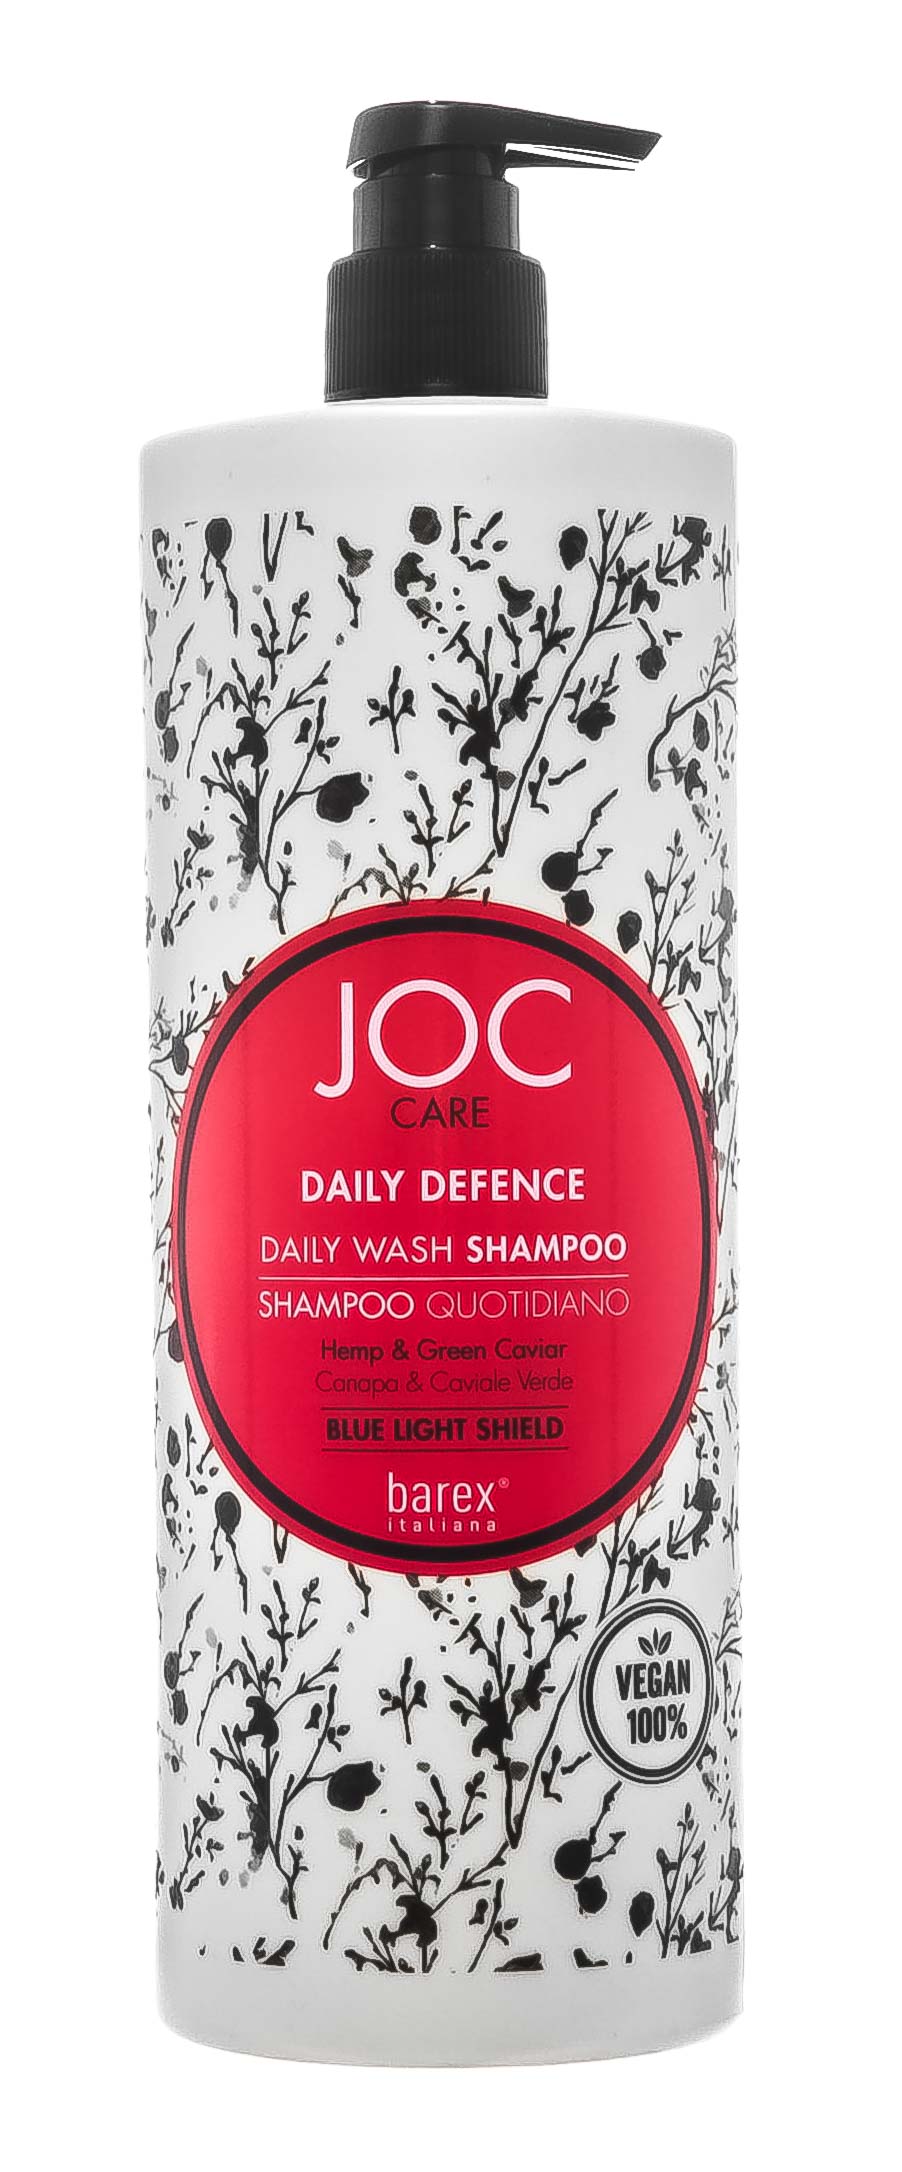 Купить Barex Шампунь Daily Defence с коноплей и зеленой икрой для ежедневного применения, 1000 мл (Barex, Joc Care Line), Италия